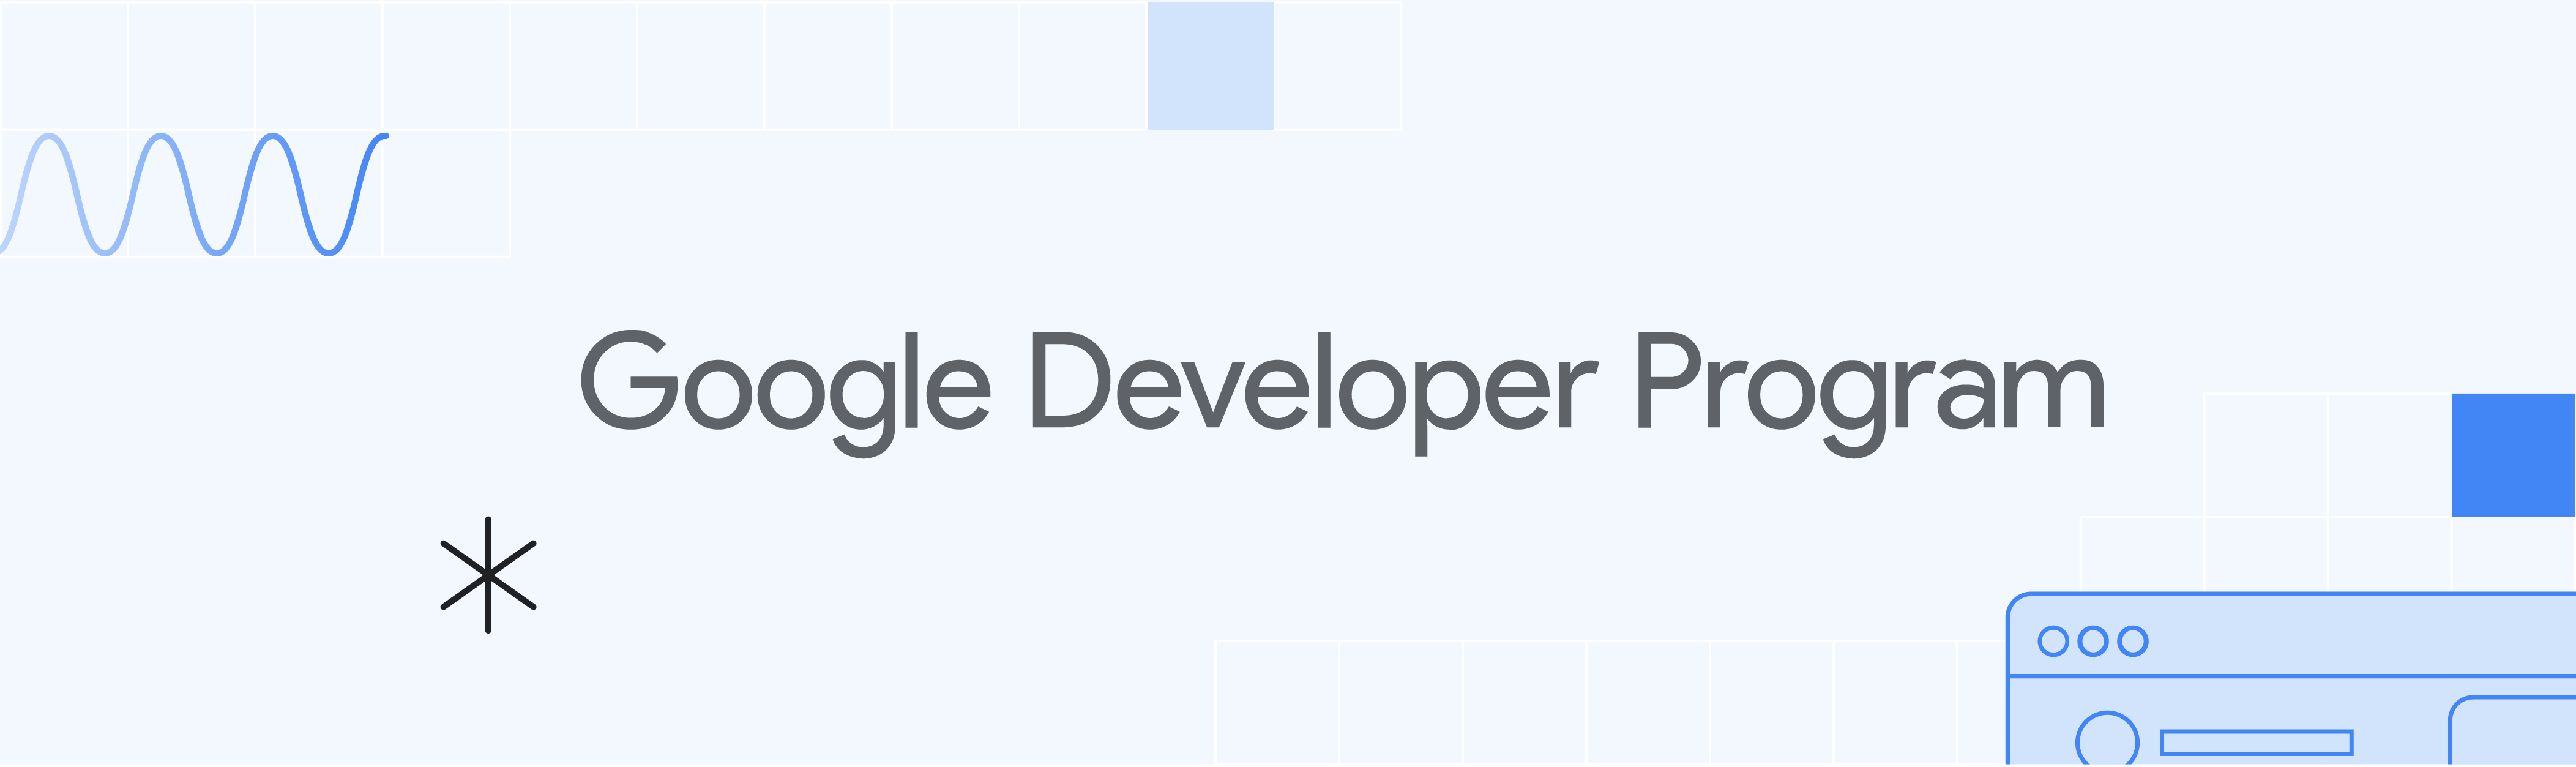 Bannière bleu clair avec &quot;Google Developer Program&quot; et illustrations.